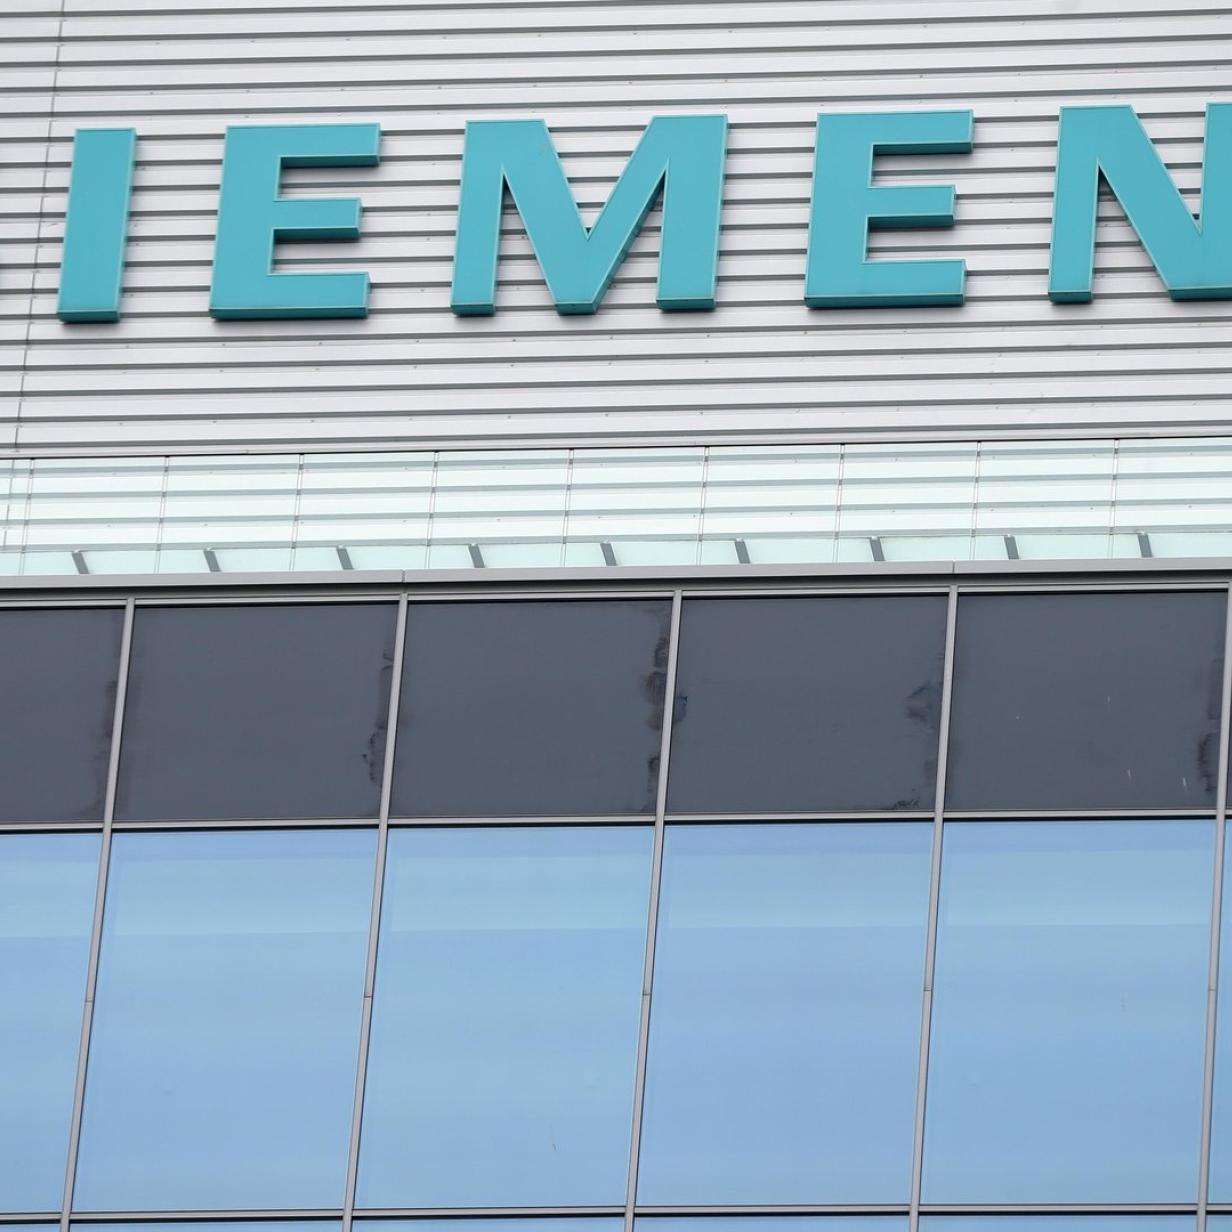 Siemens Verkauft Getriebe Tochter Flender An Investor Kurier At